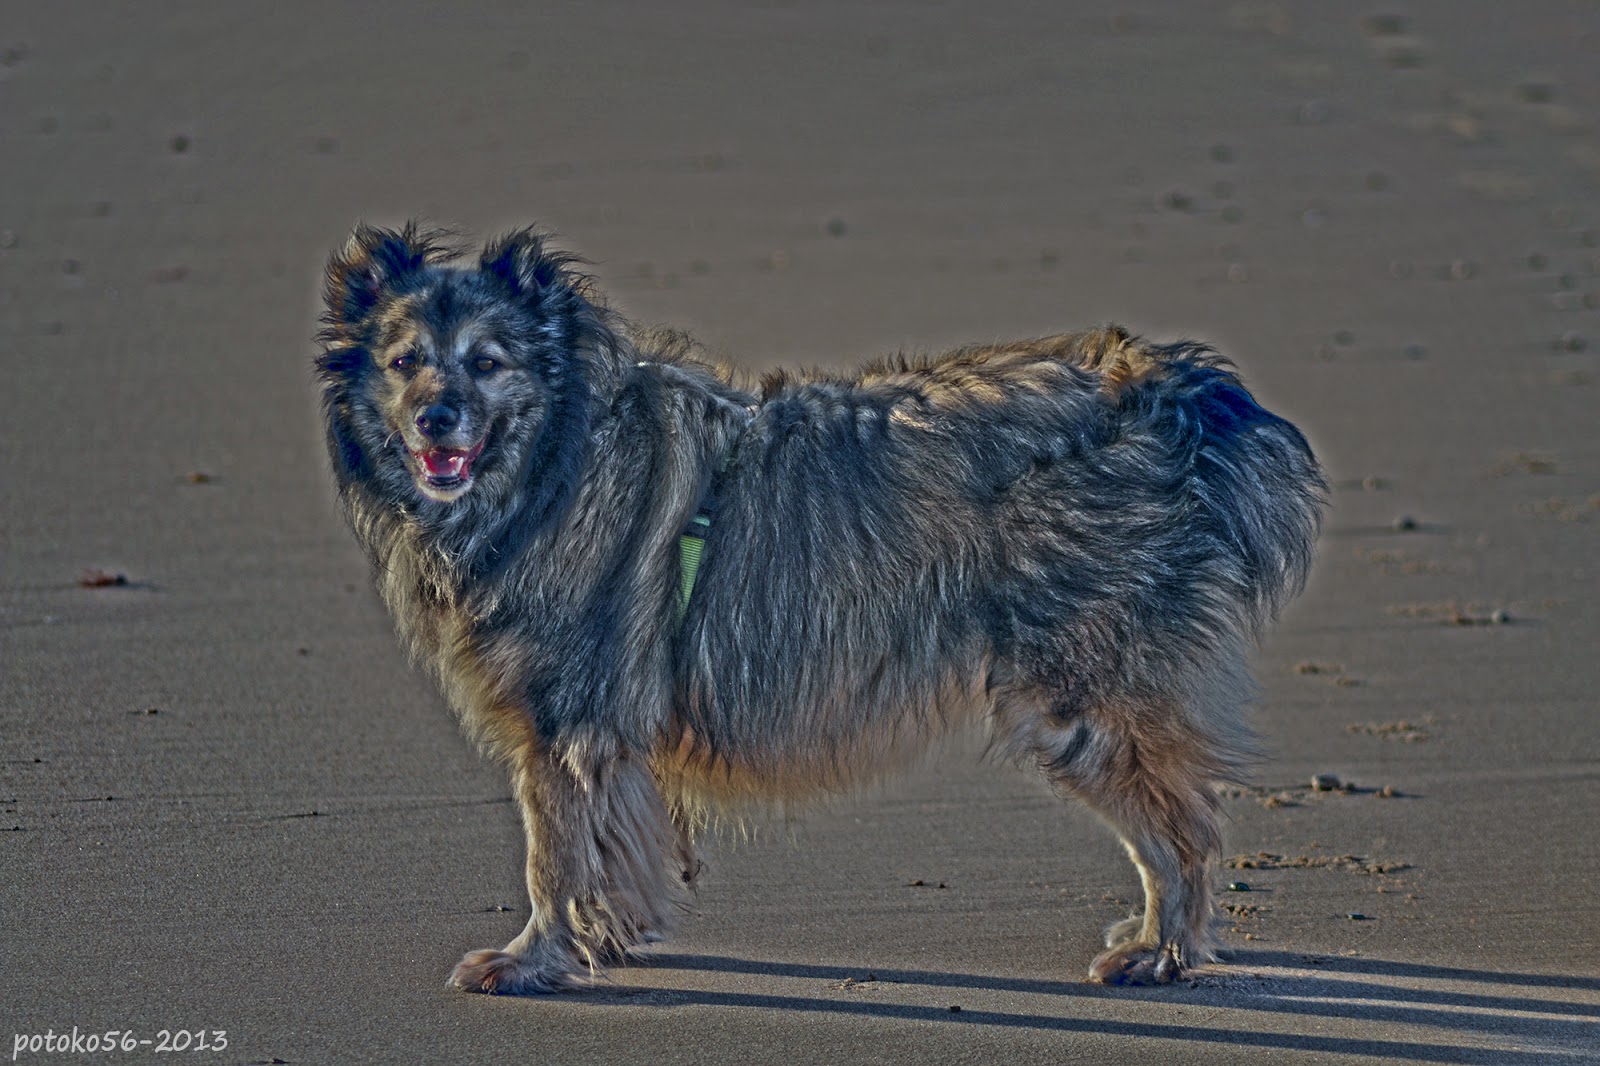 Perro paseando por la playa